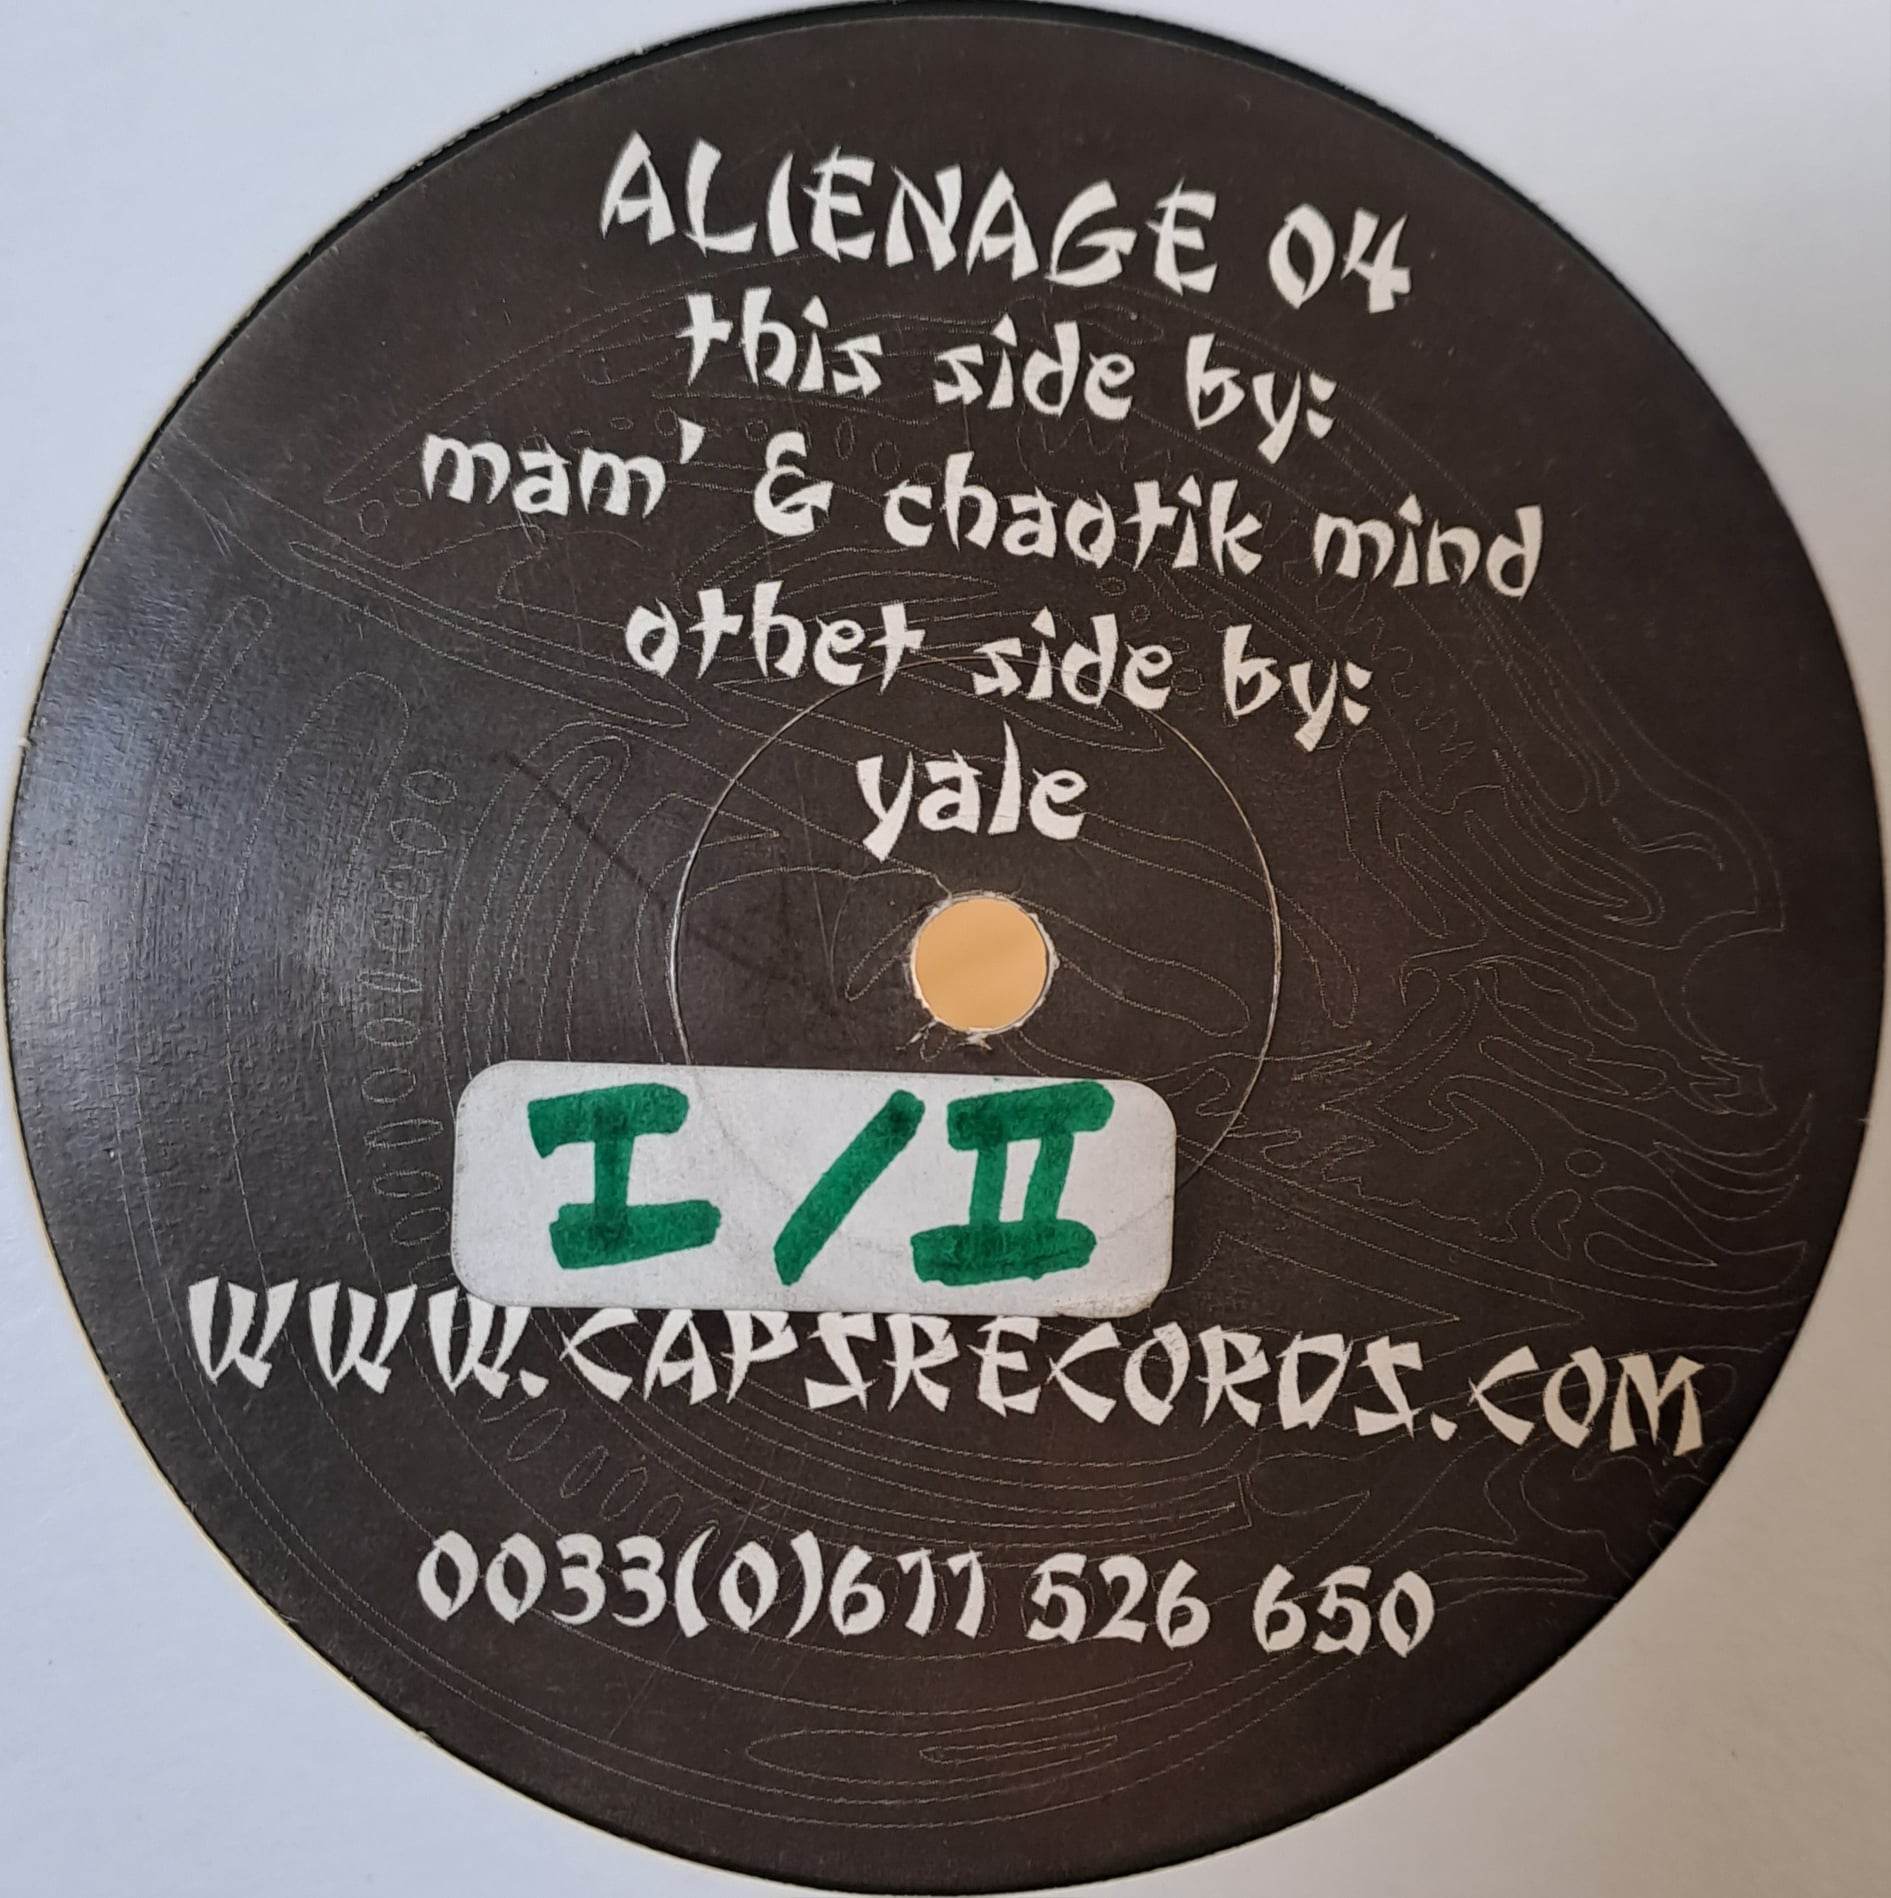 1) Alienage 04 - vinyle freetekno